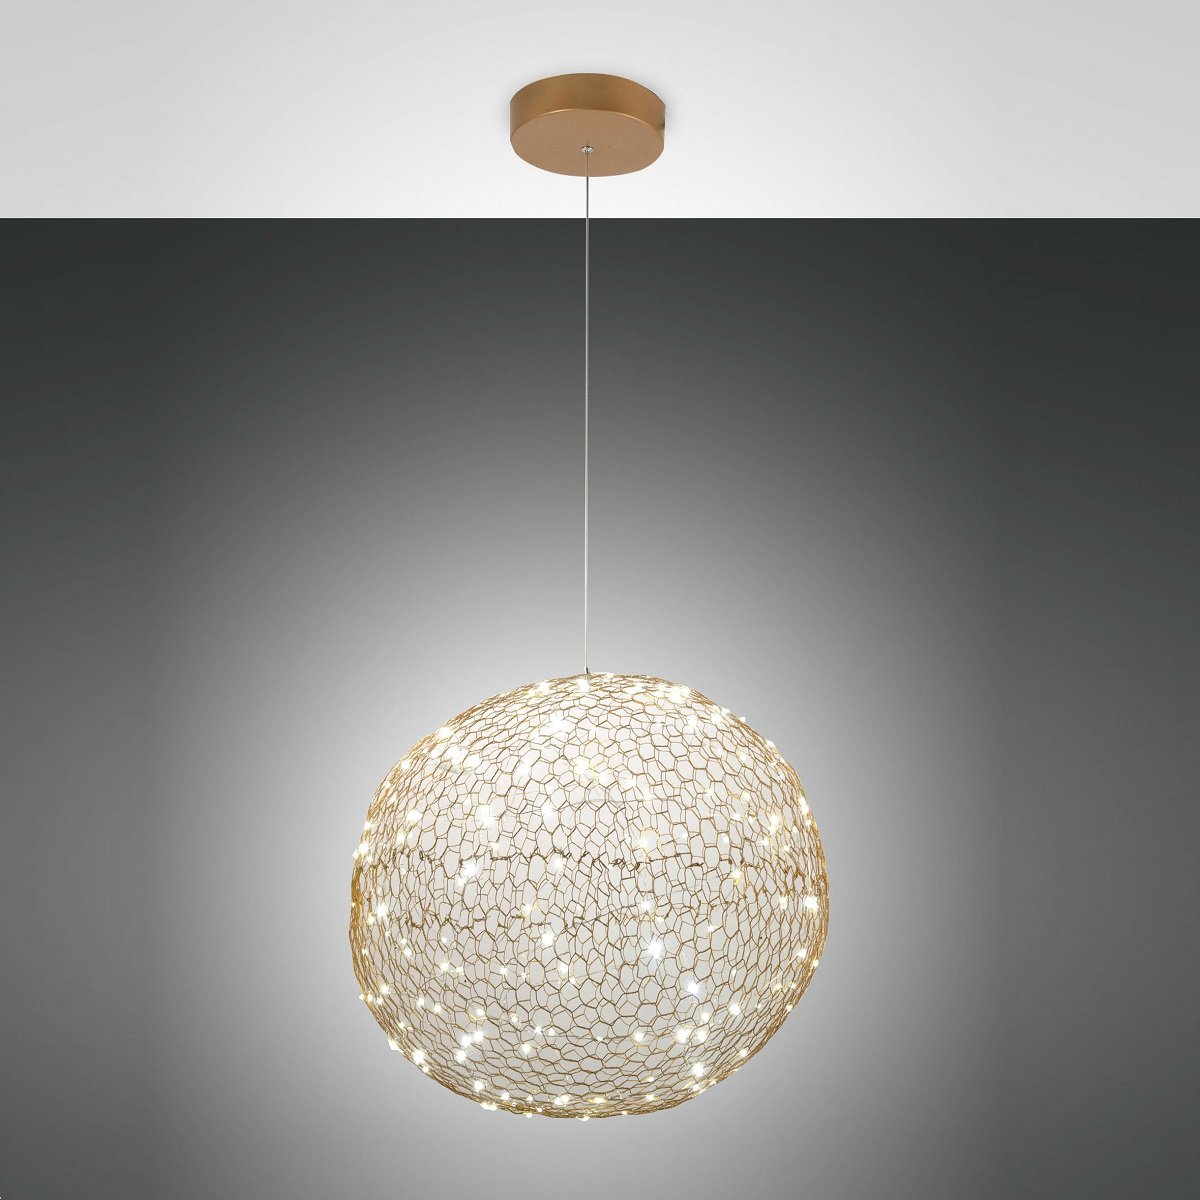 Fabas Luce 3693-45-225 im Lampen Shop kaufen Leuchten rund 50cm --> online Pendelleuchte & LED goldfarben Sumter